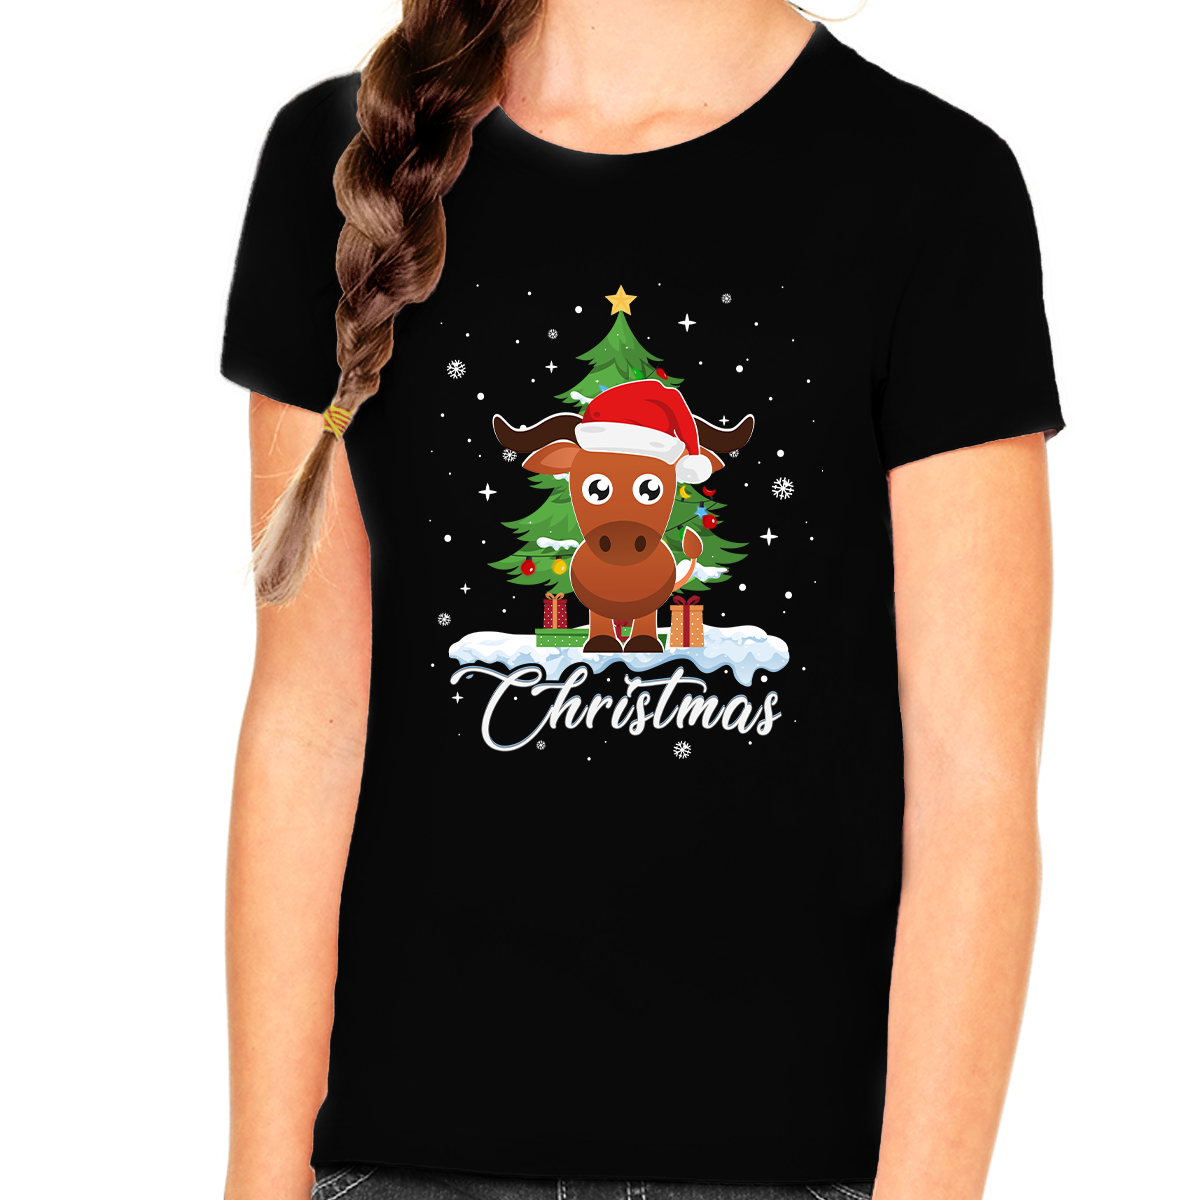 Girls Christmas Shirt Ox Christmas Outfits for Girls Youth Cute Christmas Shirts for Kids